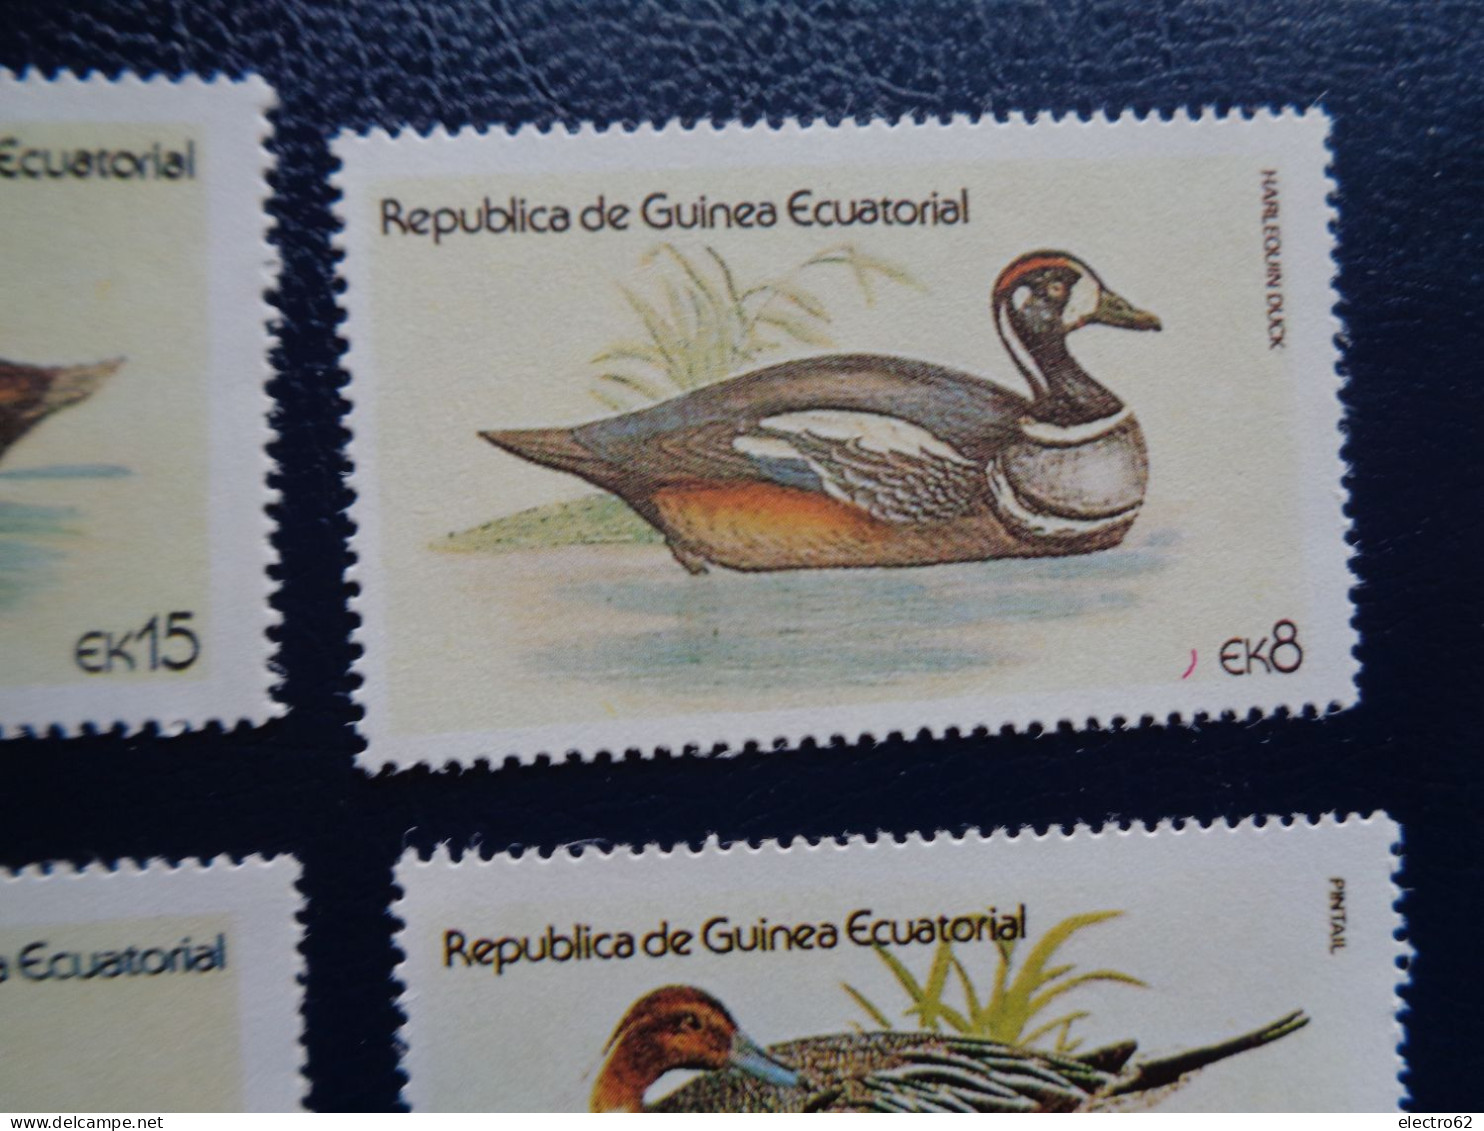 Guinée Equatoriale Canard Duck Ente Pato Anatra Eend Giappone And Guinea Ecuatorial - Canards